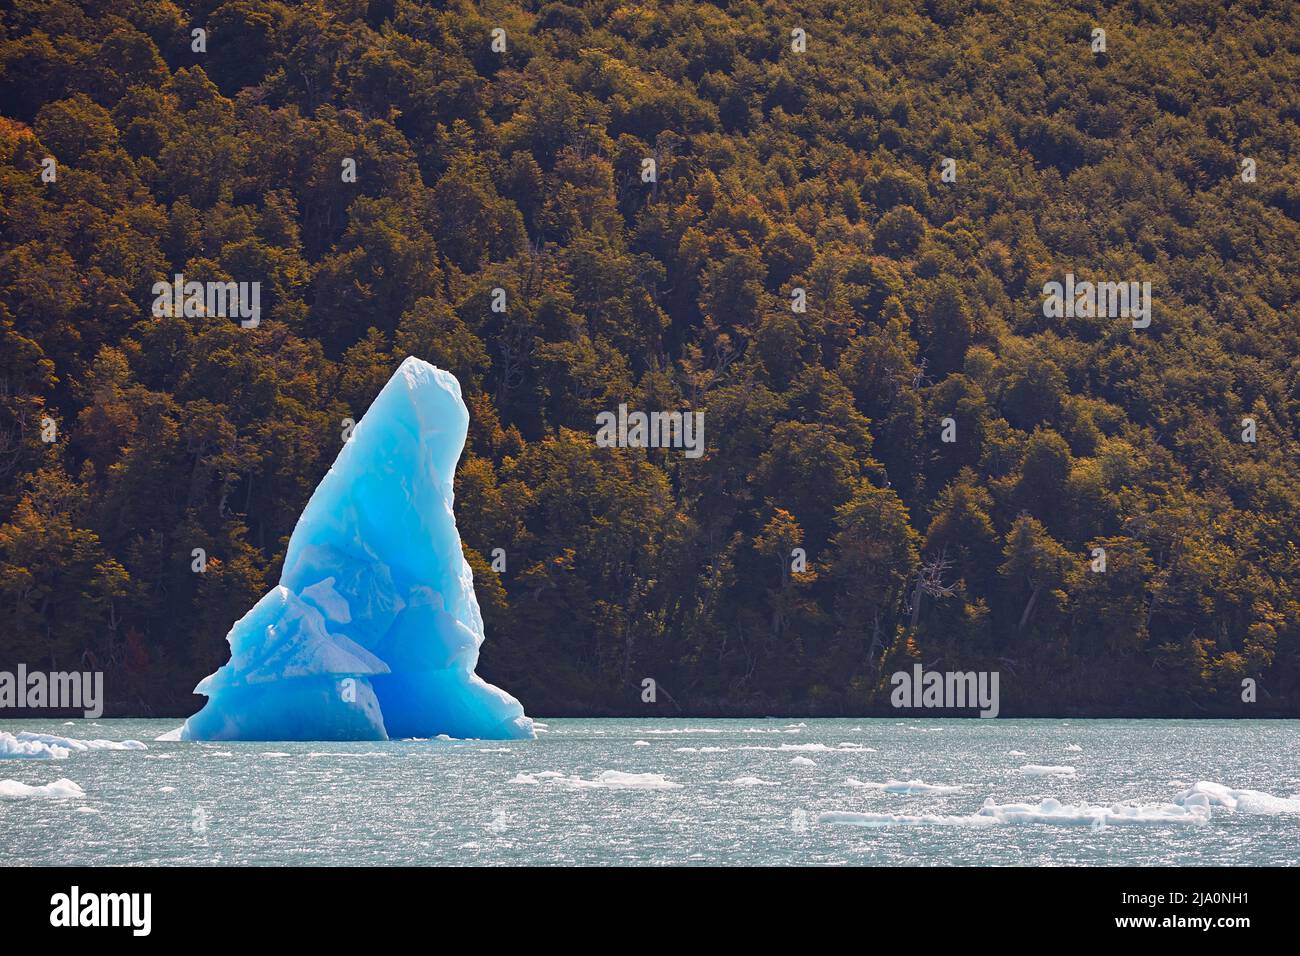 Un grand iceberg bleu dans la baie du 'Canal de los Tempanos' avec des arbres d'automne en arrière-plan, parc national de Los Glaciares, El Calafate, Argentine. Banque D'Images